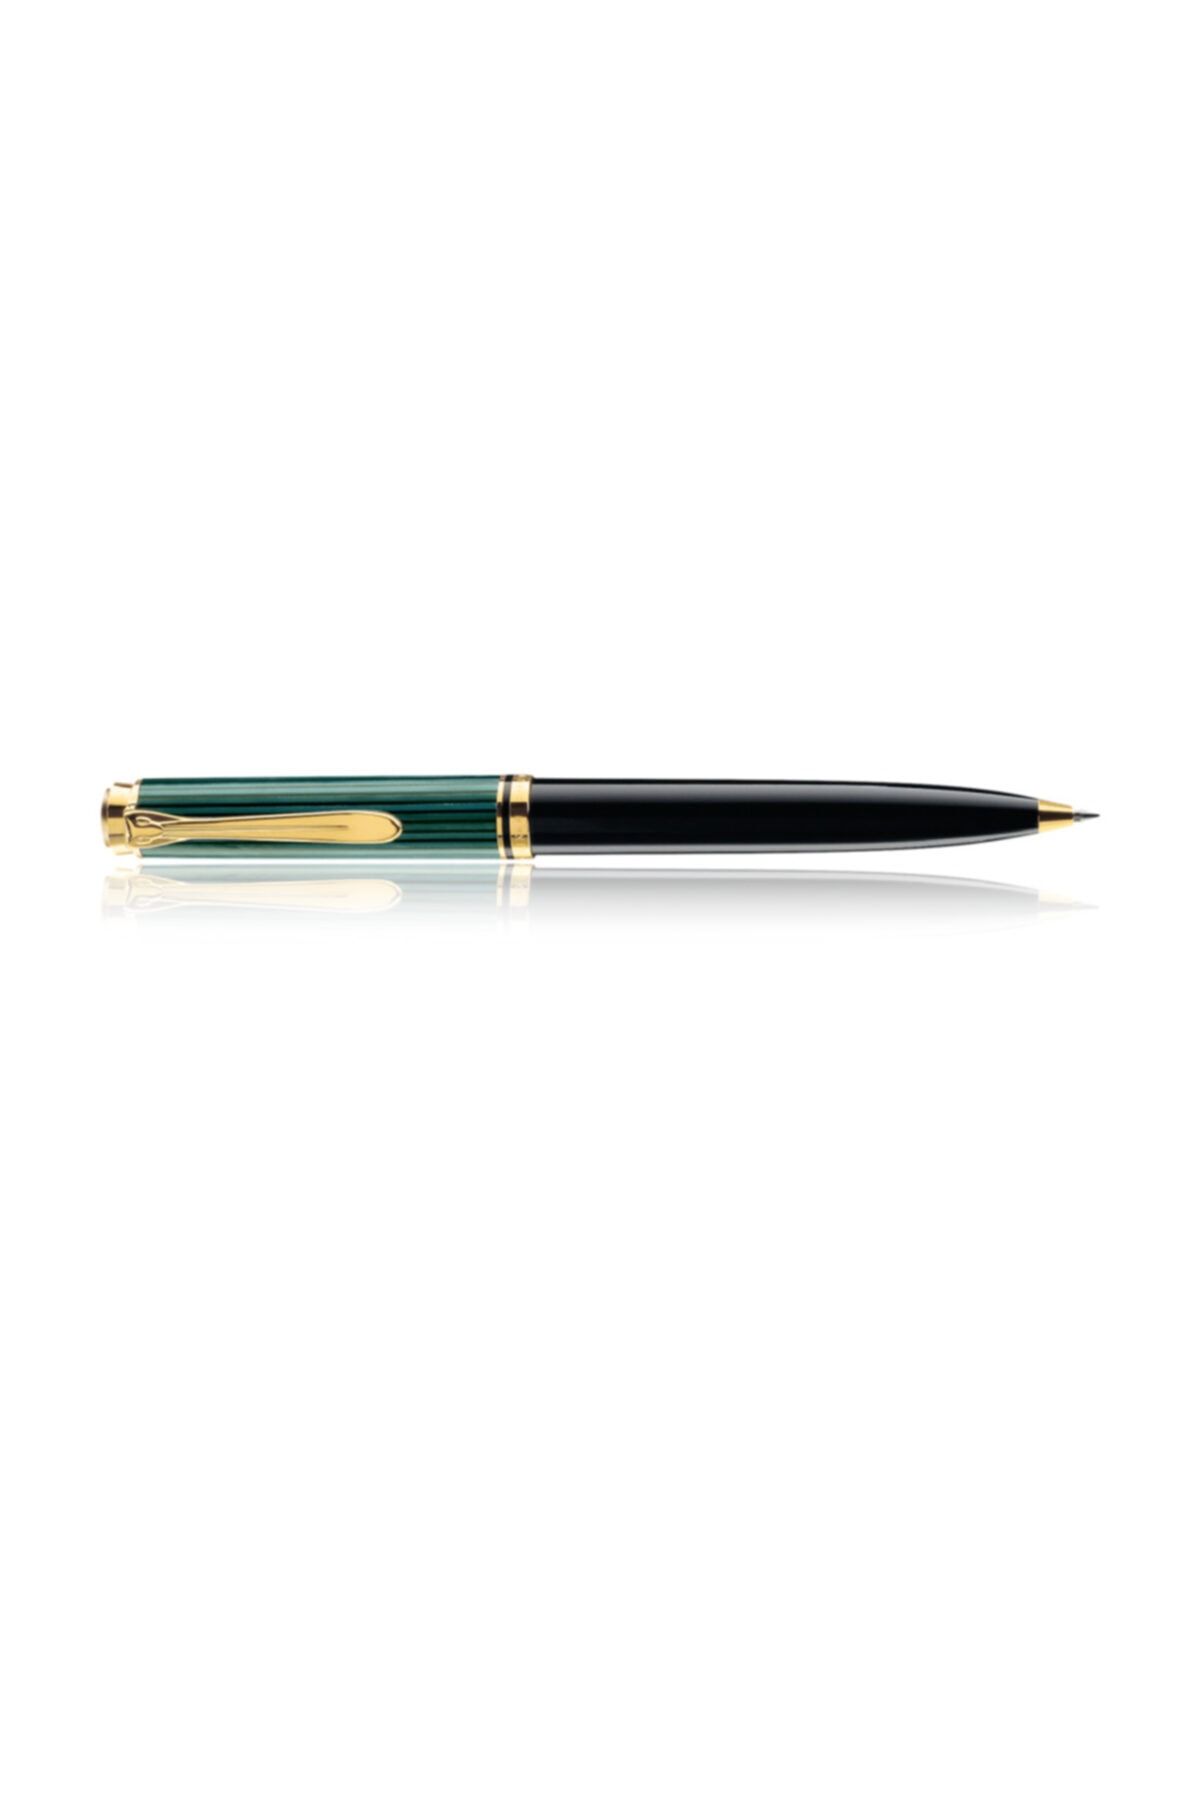 Pelikan K300 Tükenmez Kalem 14 Ayar Altın Kaplama Yeşil-siyah Pel-k300y